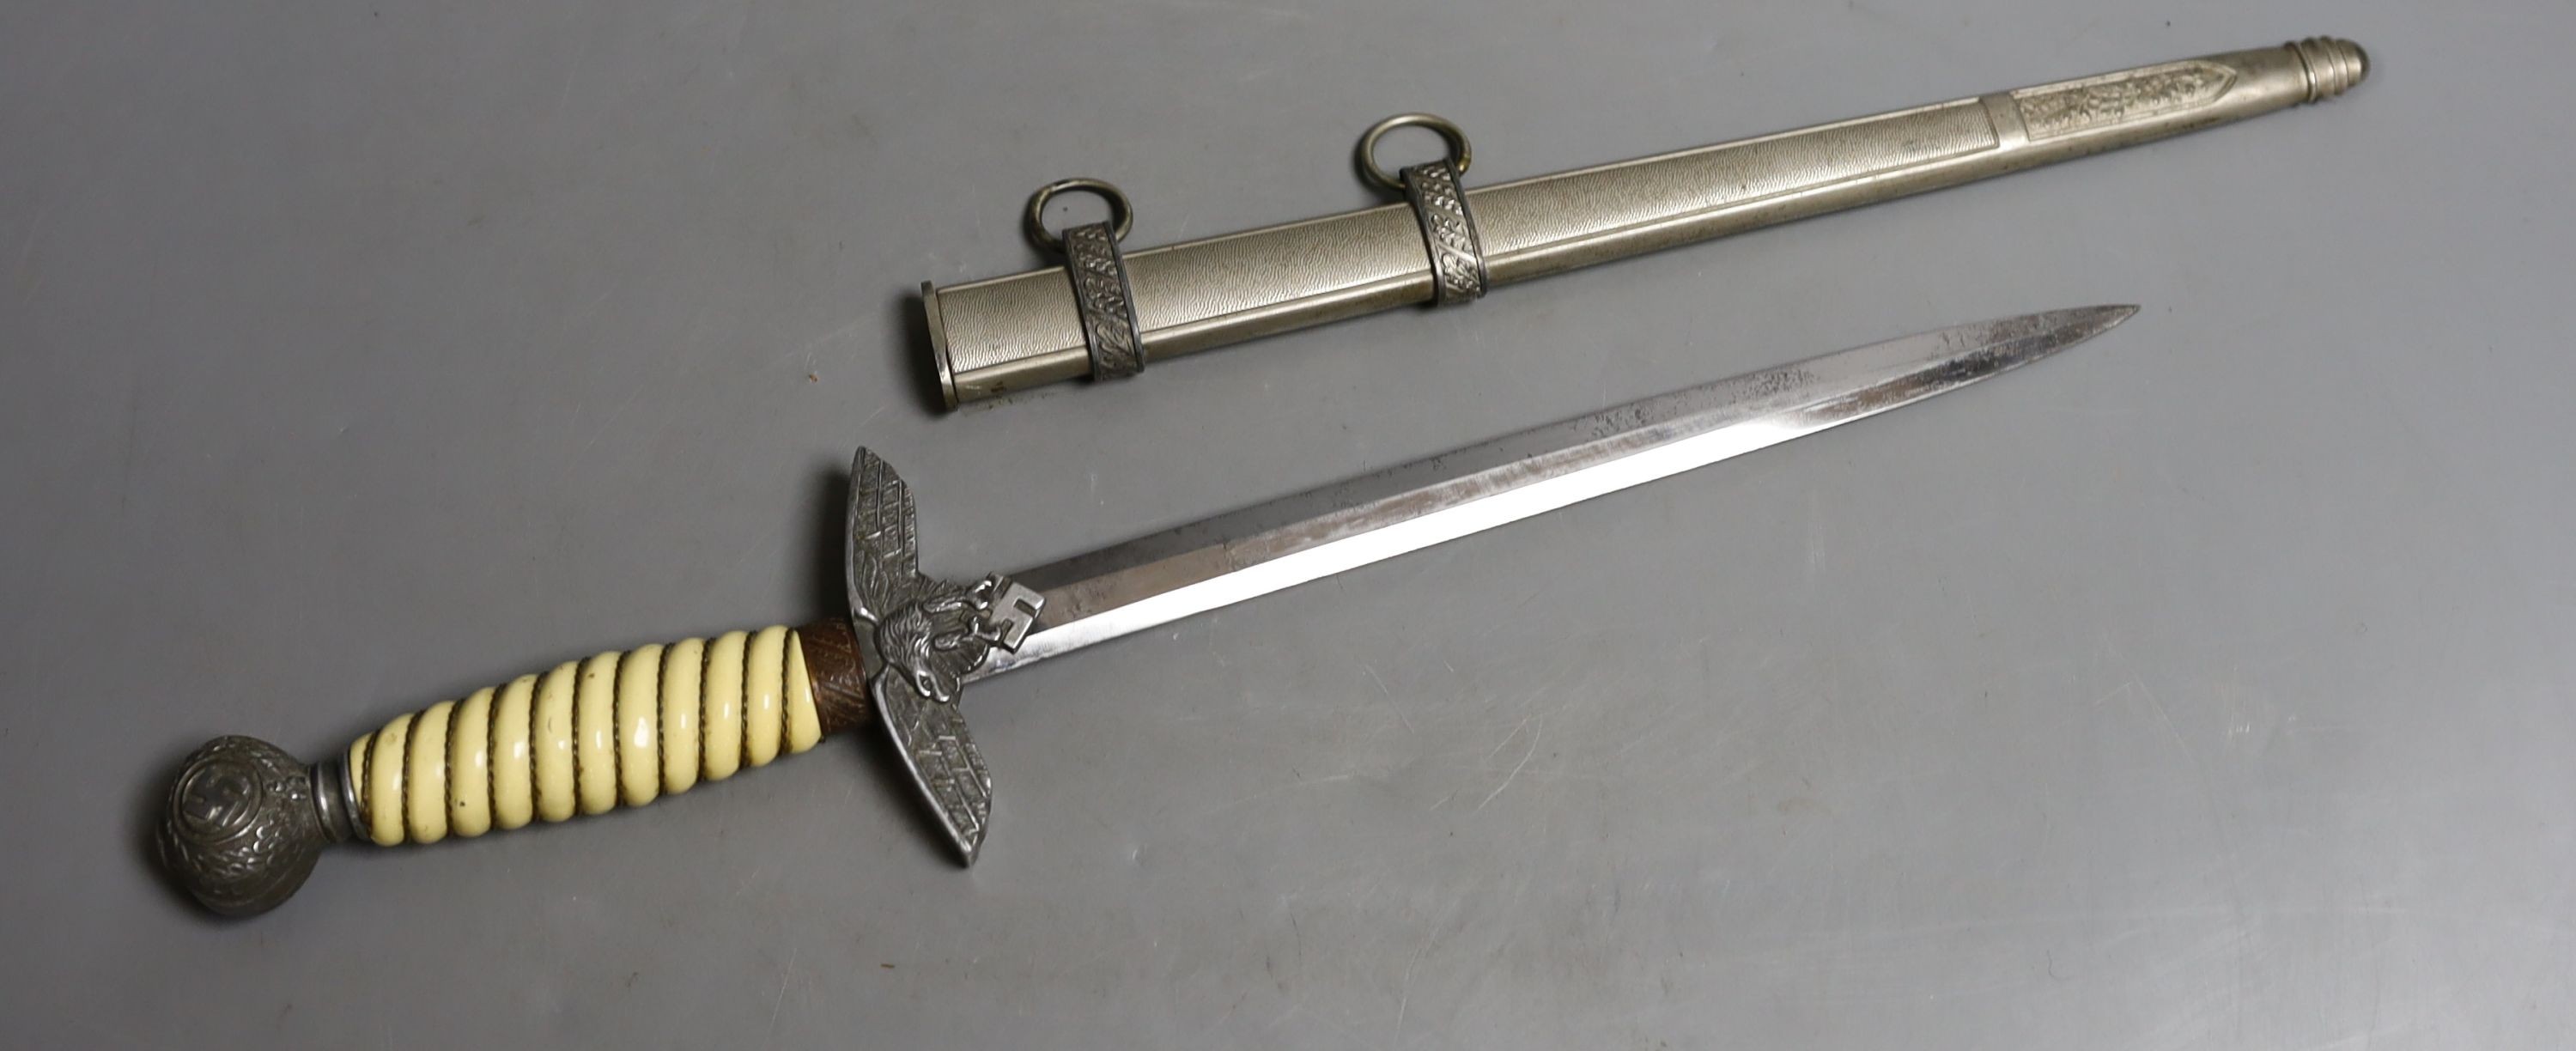 An original Italian officer's dagger MVSN, no maker, 43 cms long.